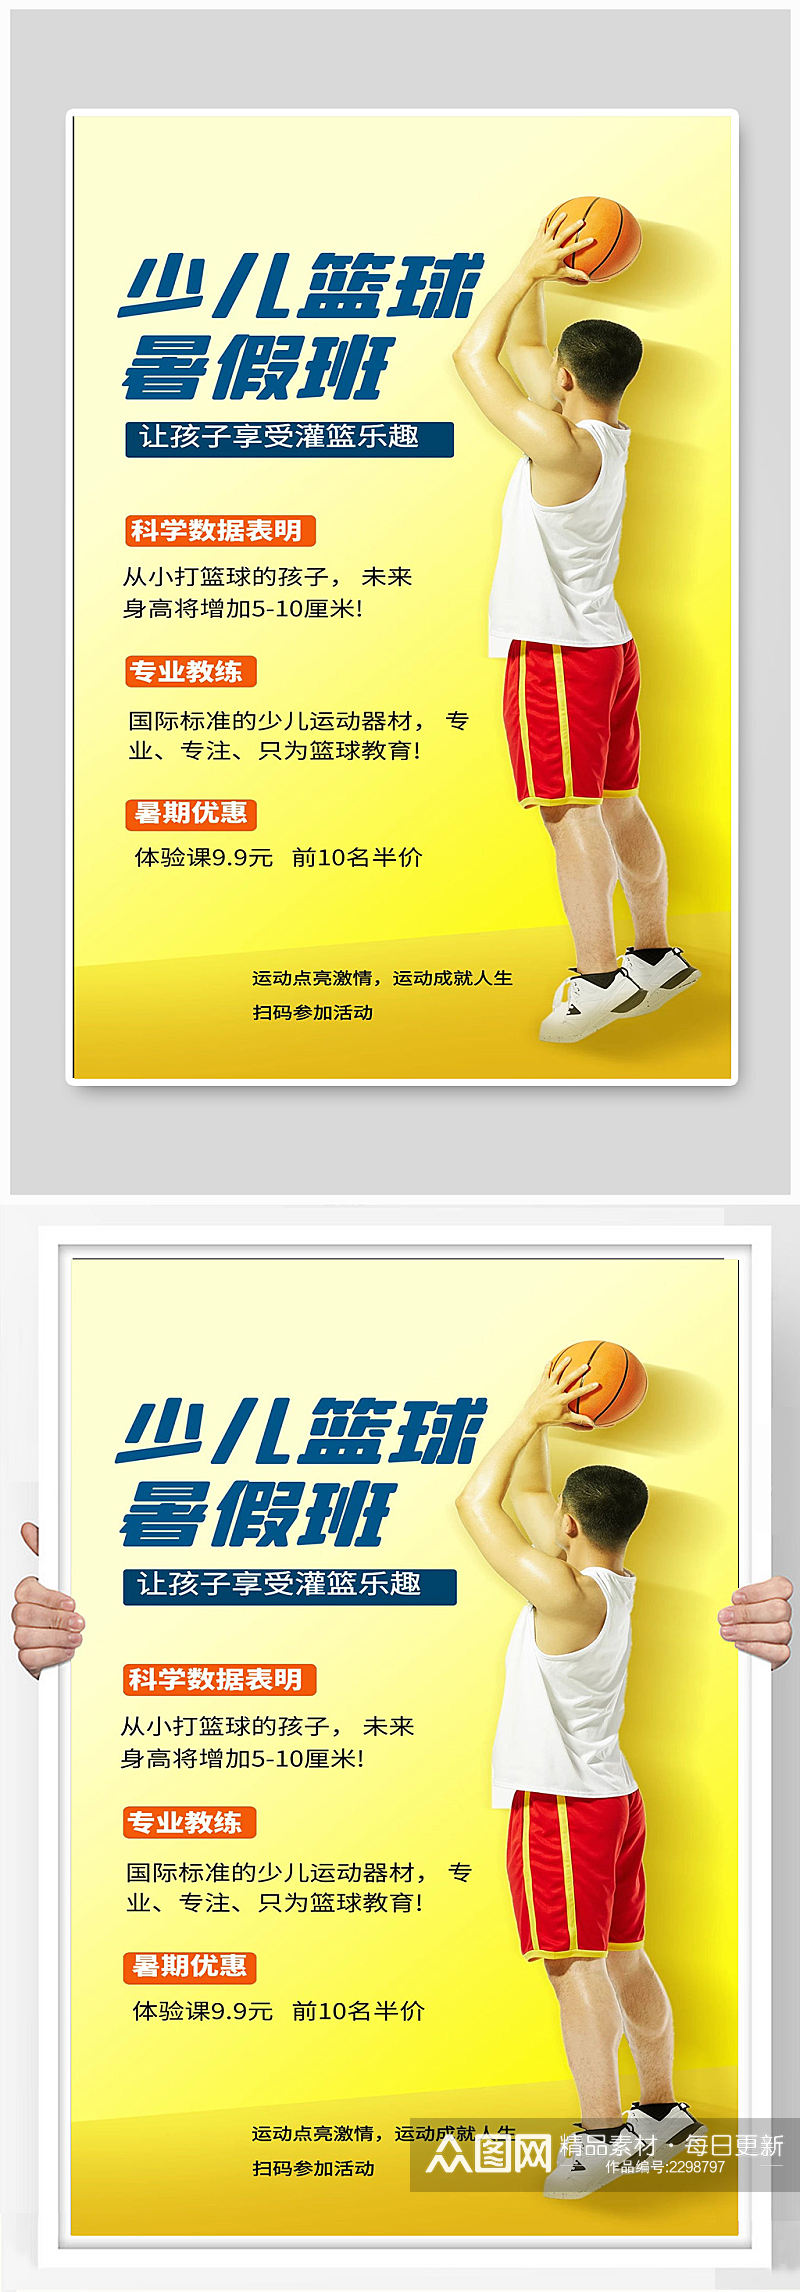 少儿篮球宣传海报设计素材